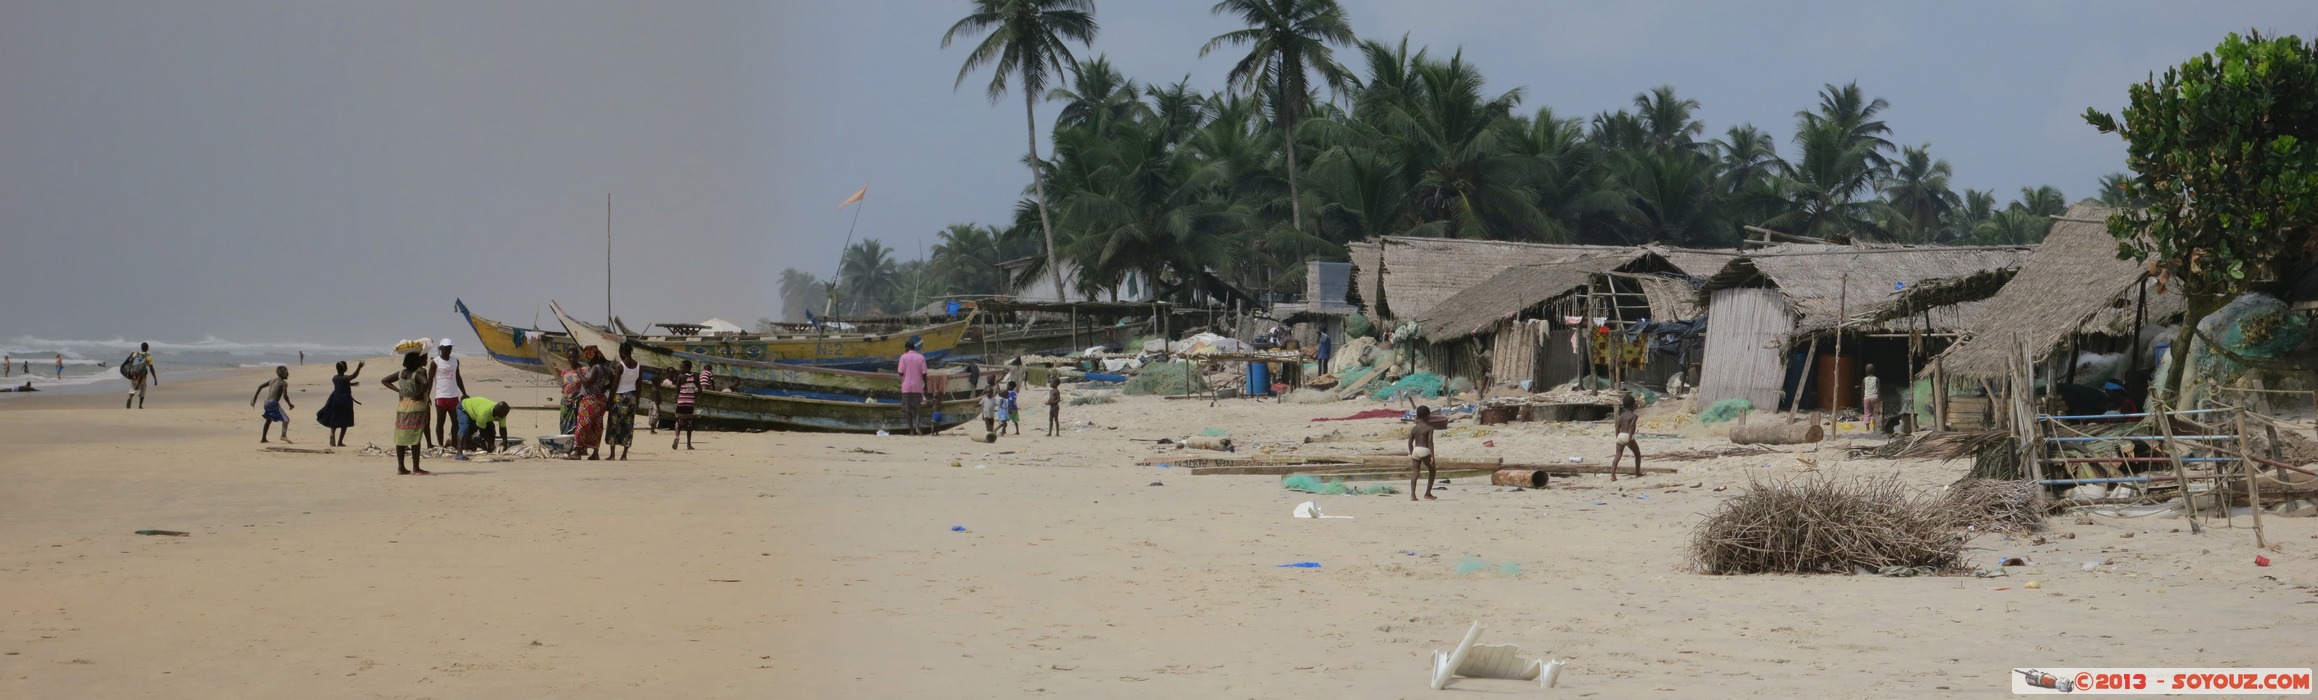 Assinie - Pecheurs et village - panorama
Mots-clés: CIV CÃ´te d&#039;Ivoire Sud-Como plage Palmier mer bateau pecheur panorama geo:lat=5.15813209 geo:lon=-3.46405149 geotagged